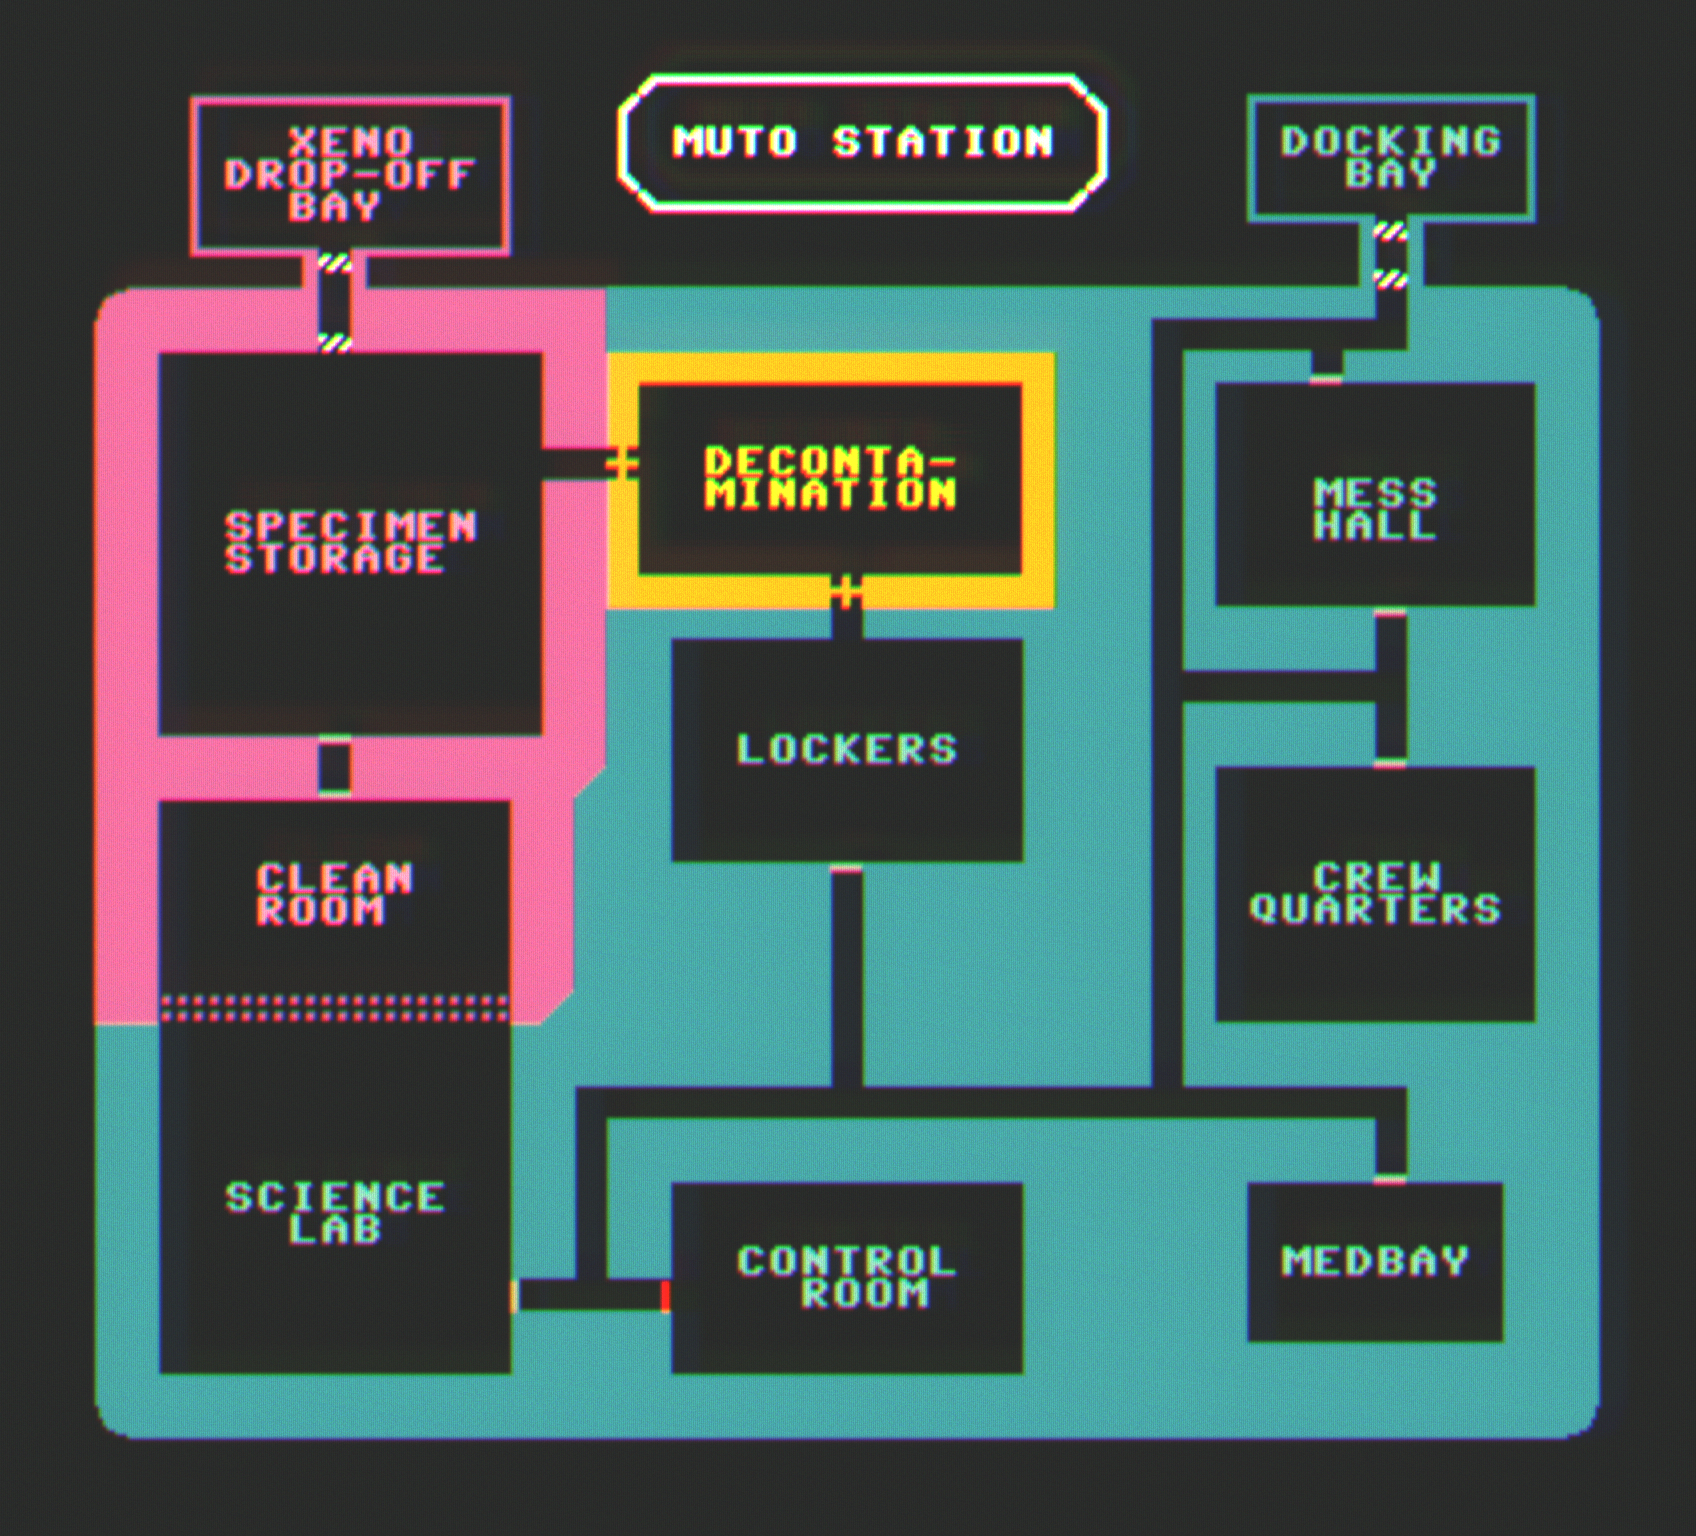 Muto Station Map